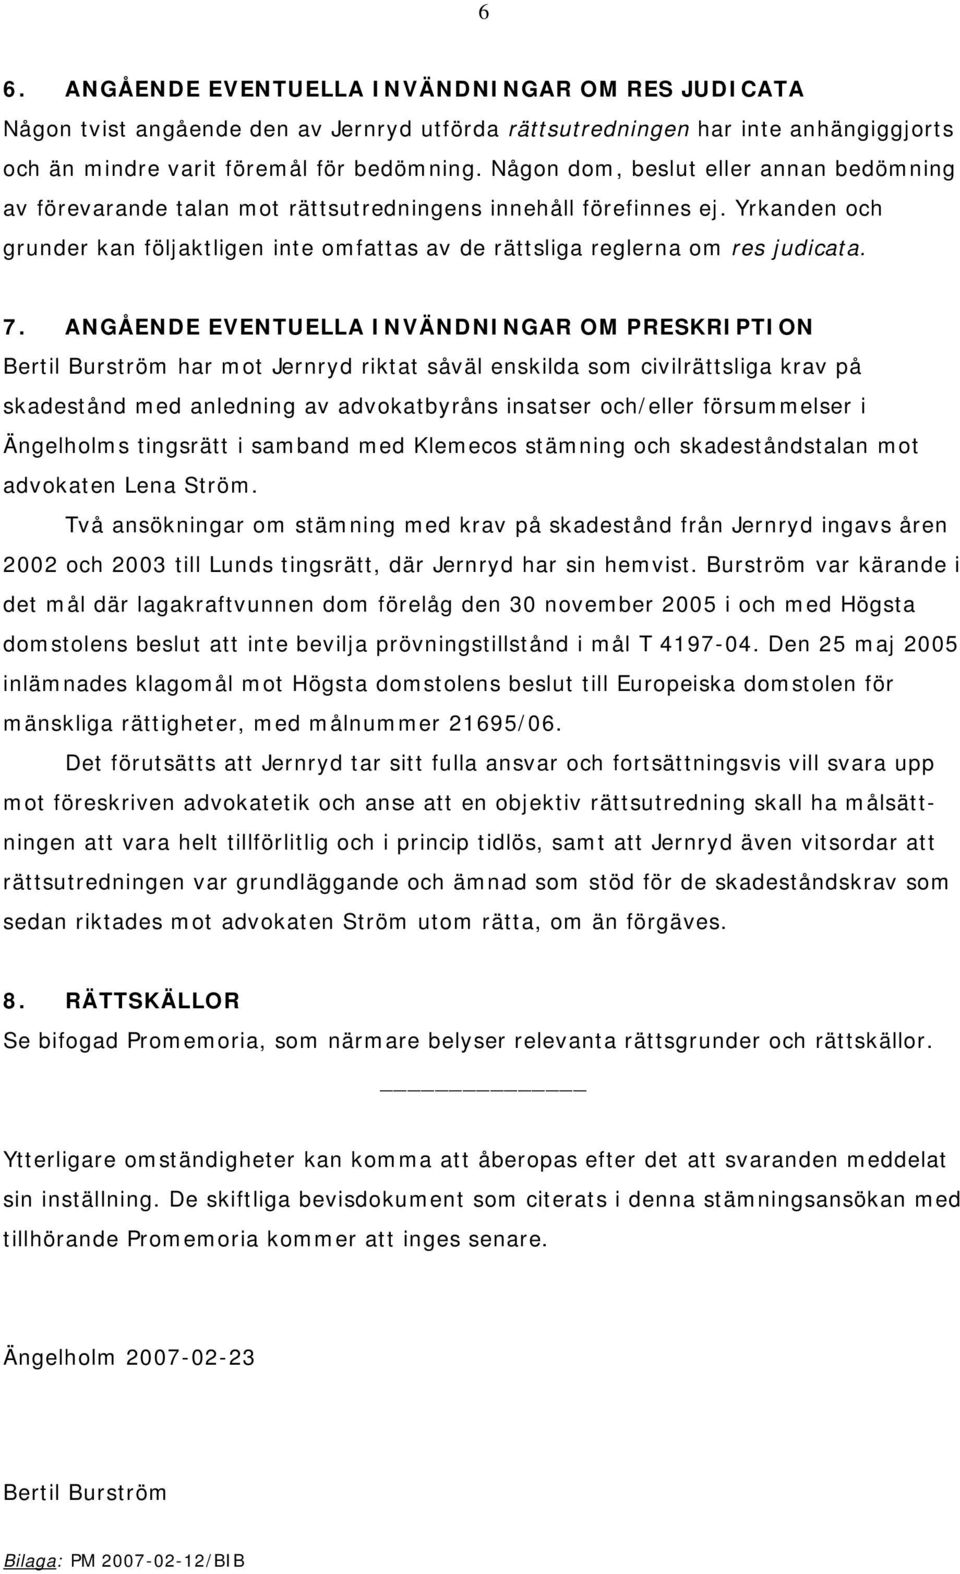 7. ANGÅENDE EVENTUELLA INVÄNDNINGAR OM PRESKRIPTION Bertil Burström har mot Jernryd riktat såväl enskilda som civilrättsliga krav på skadestånd med anledning av advokatbyråns insatser och/eller